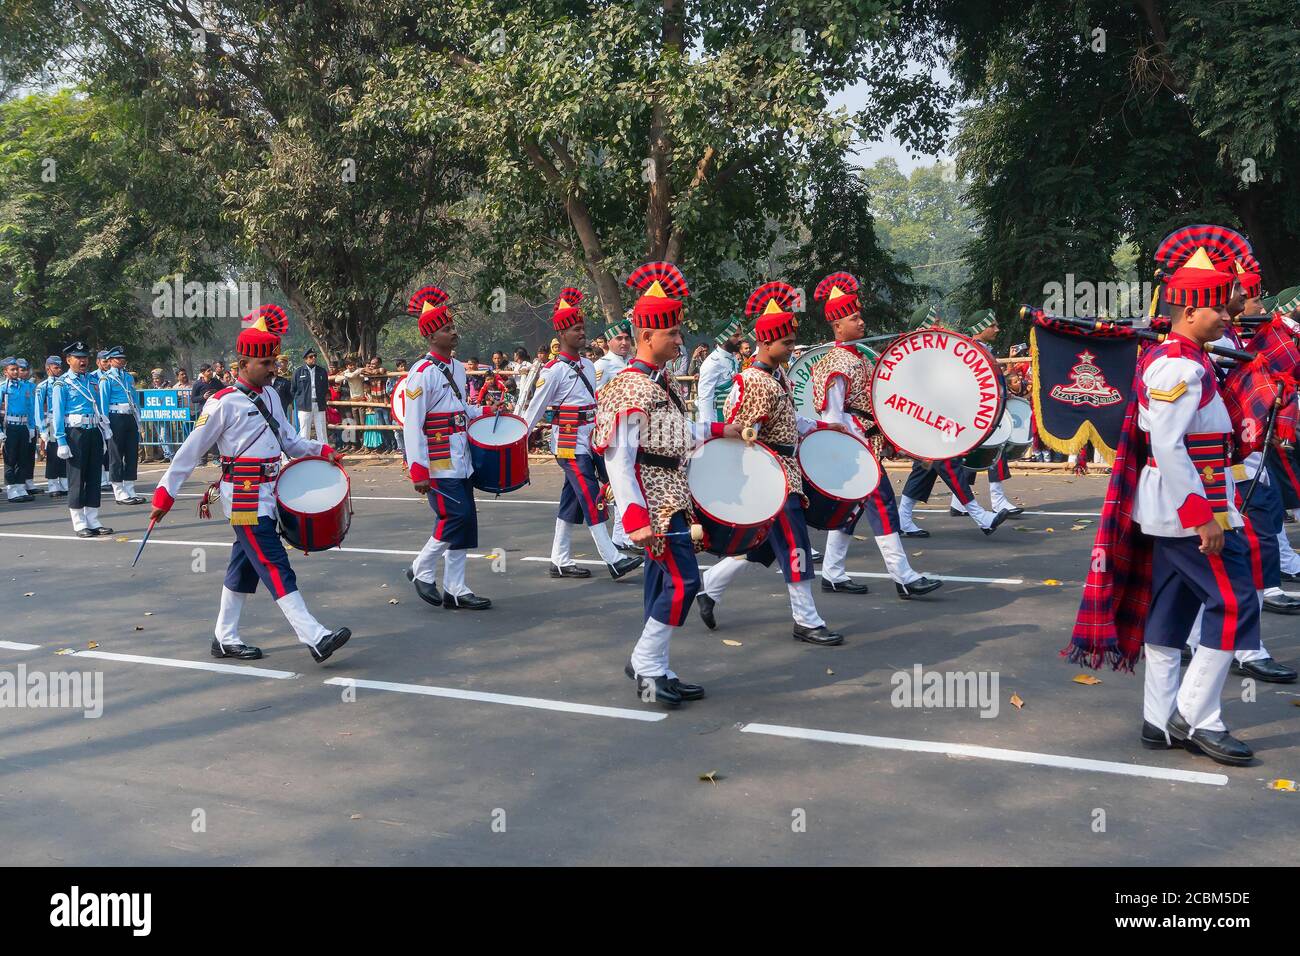 Kolkata, Bengala Occidental, India - 26 de enero de 2020: Marzo pasado de los oficiales del ejército indio de la artillería del este, tocando batería en la banda musical. Foto de stock